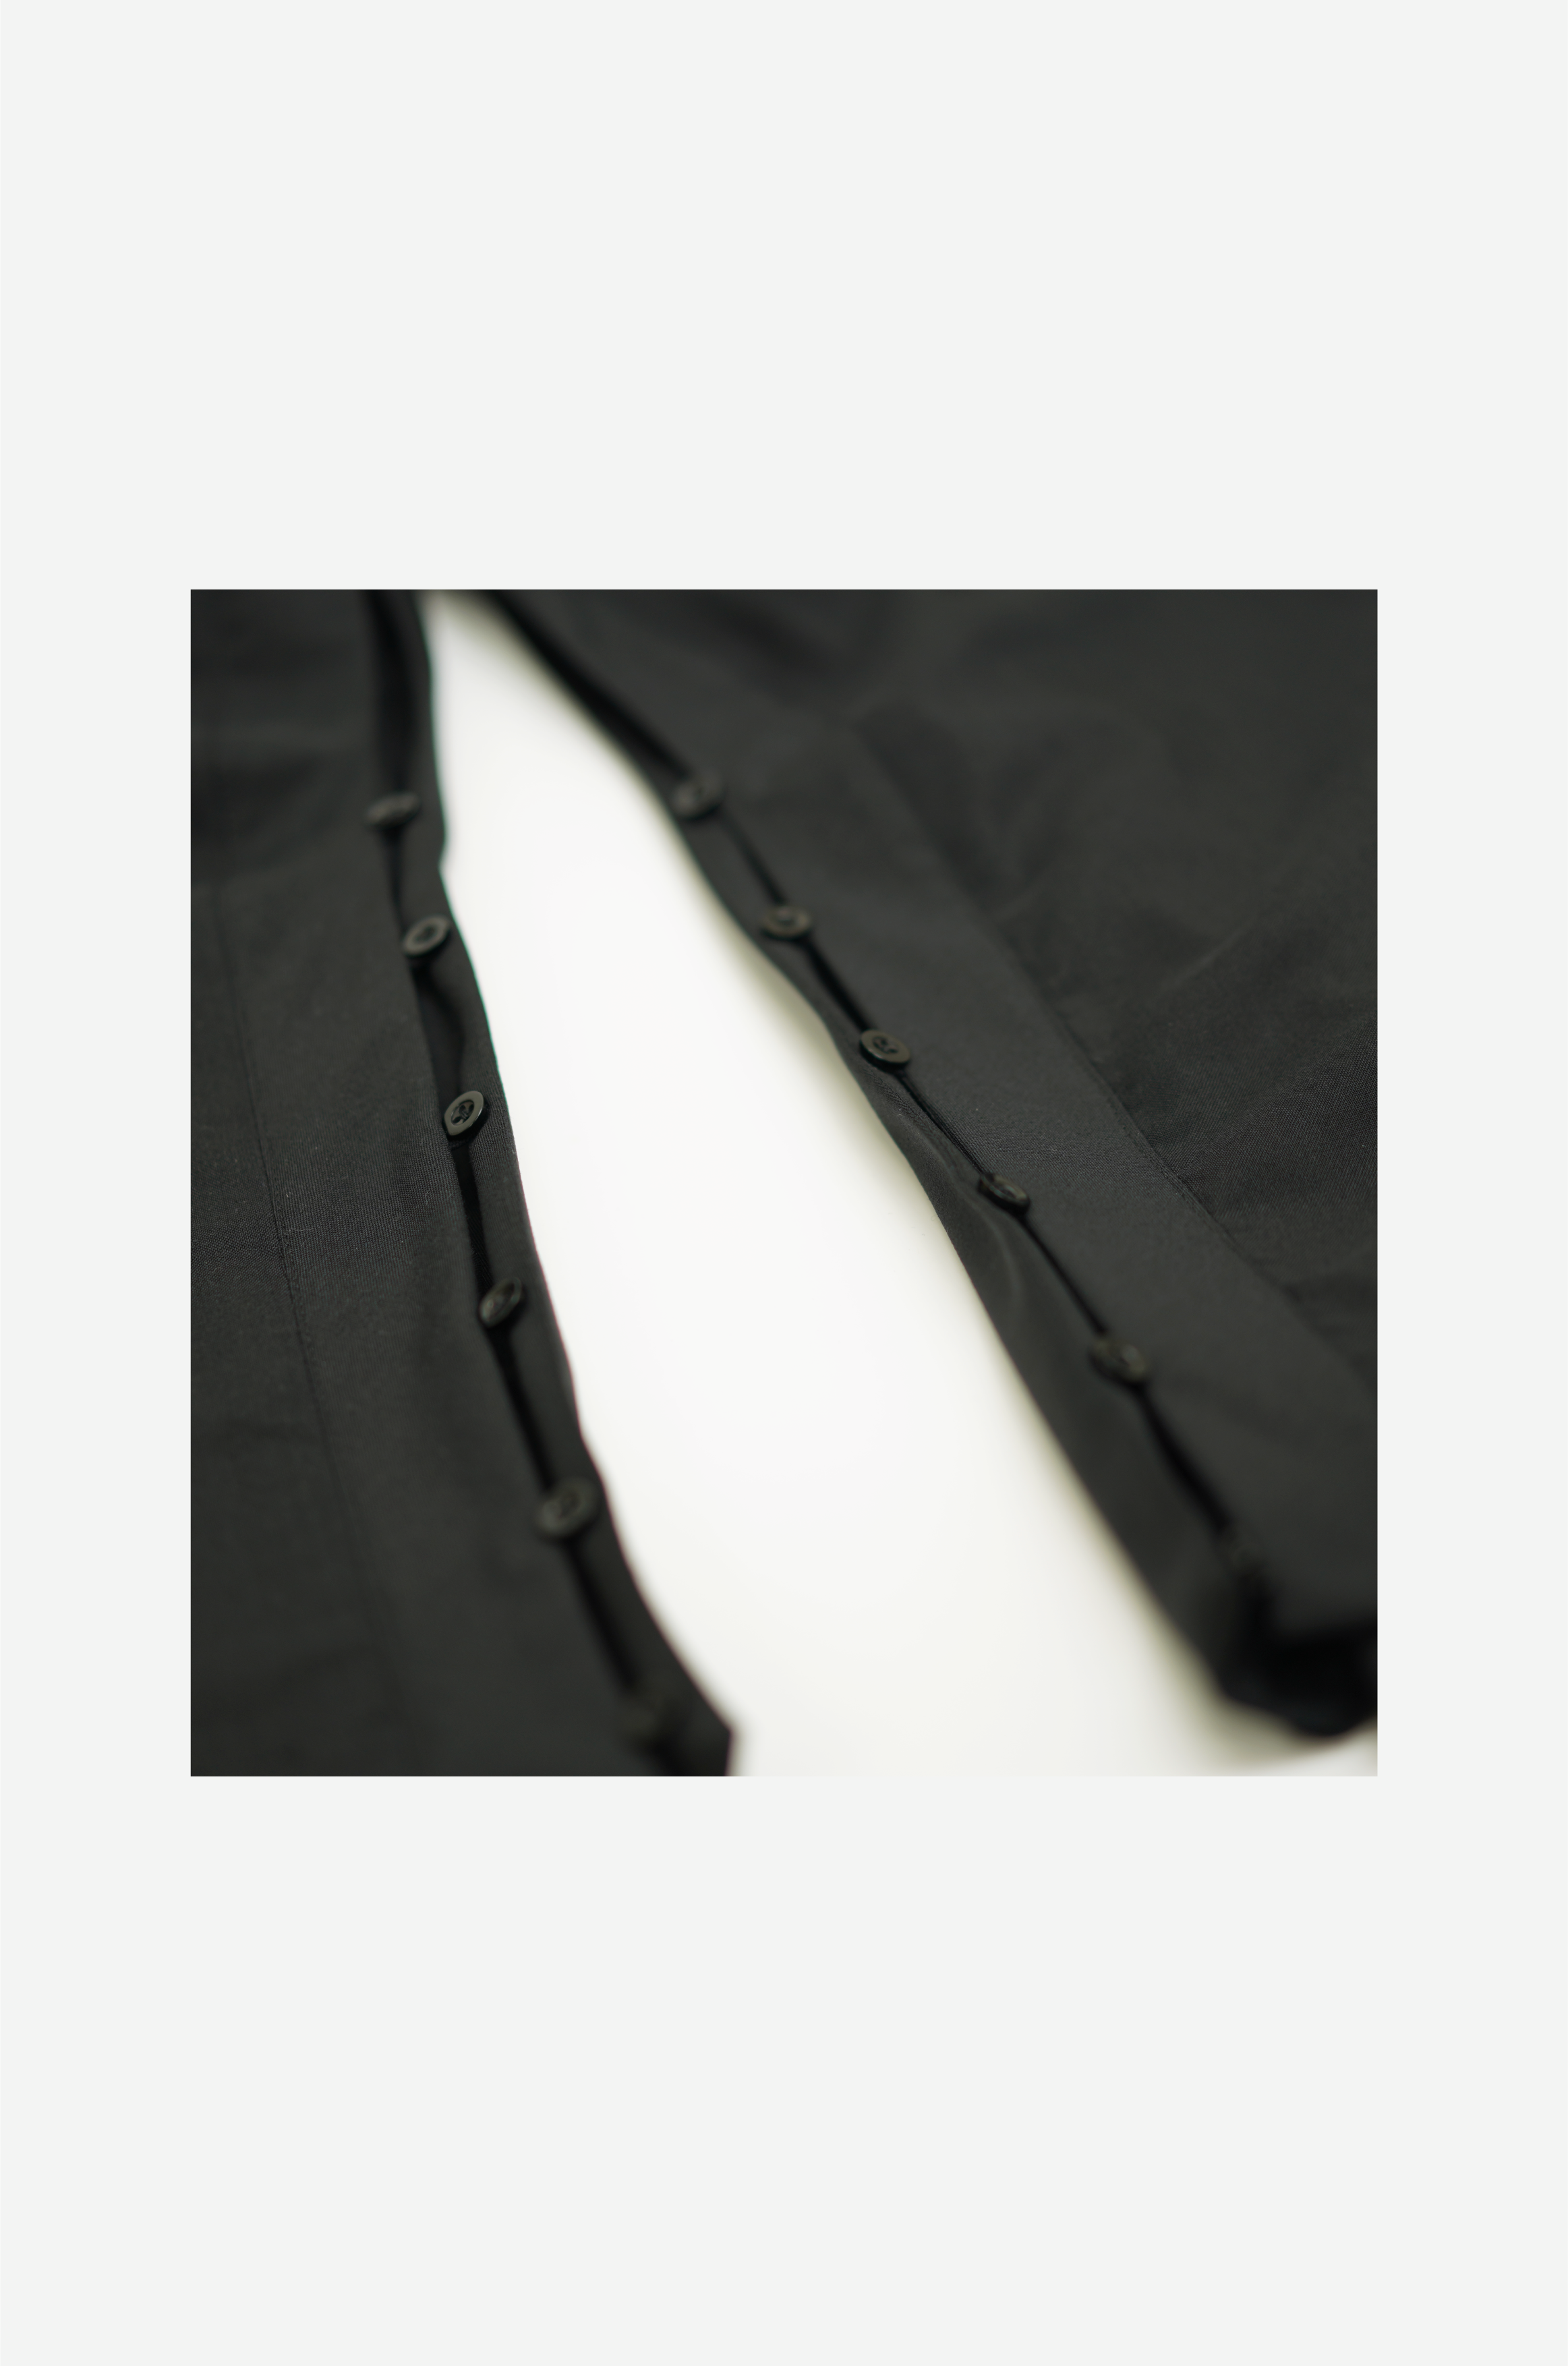 Dual wide pants “Black”